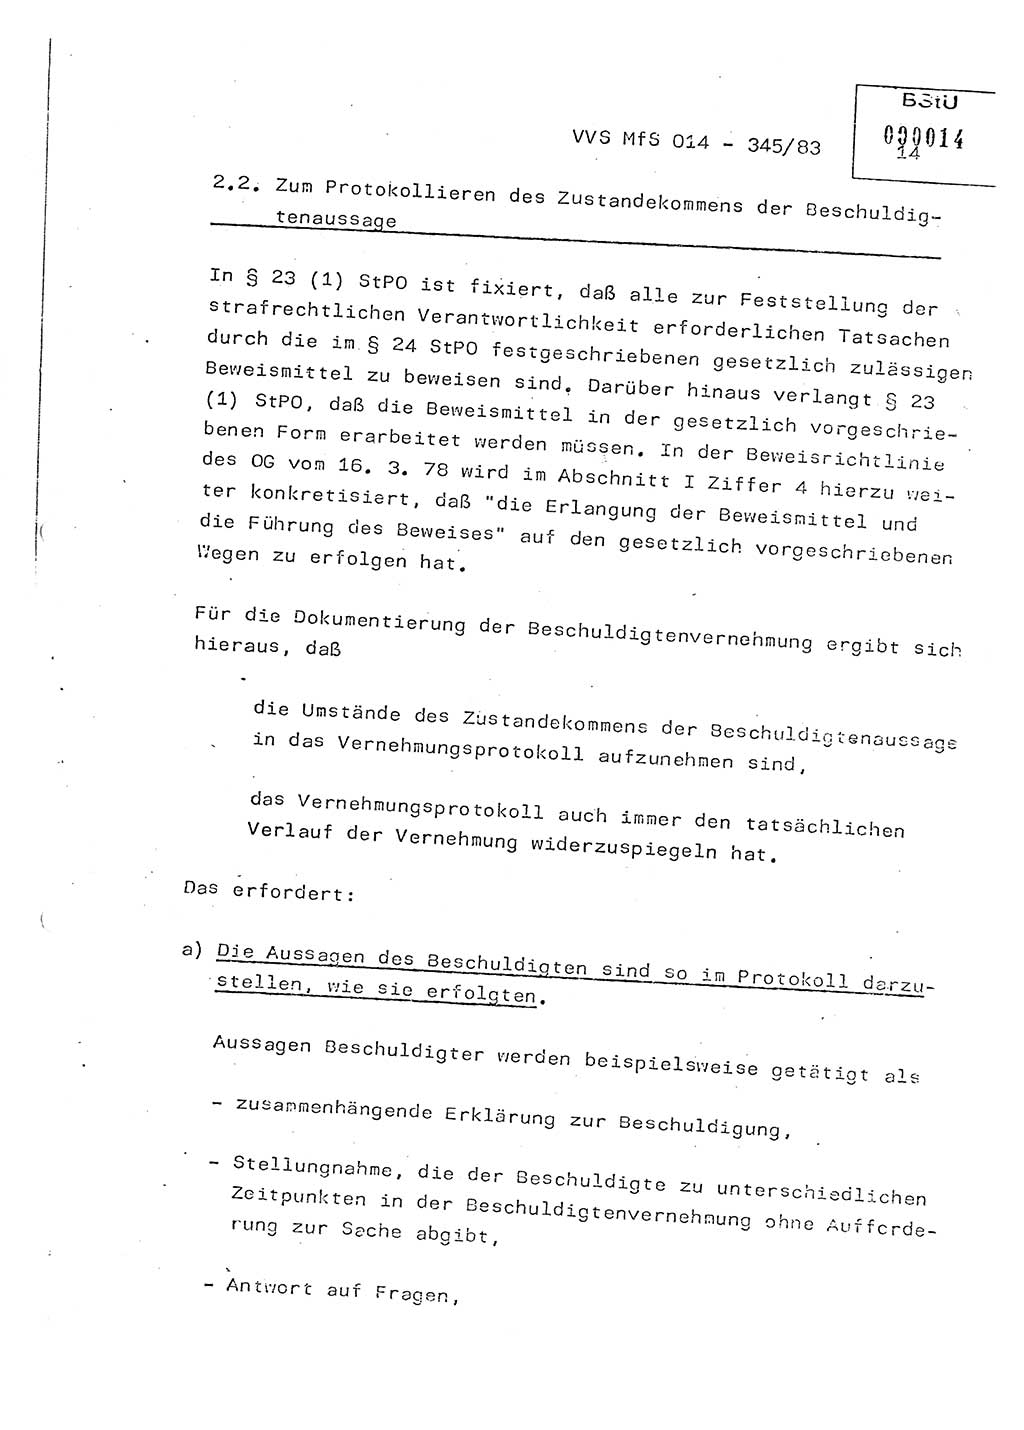 Lektion Ministerium für Staatssicherheit (MfS) [Deutsche Demokratische Republik (DDR)], Hauptabteilung (HA) Ⅸ, Vertrauliche Verschlußsache (VVS) o014-345/83, Berlin 1983, Seite 14 (Lekt. MfS DDR HA Ⅸ VVS o014-345/83 1983, S. 14)